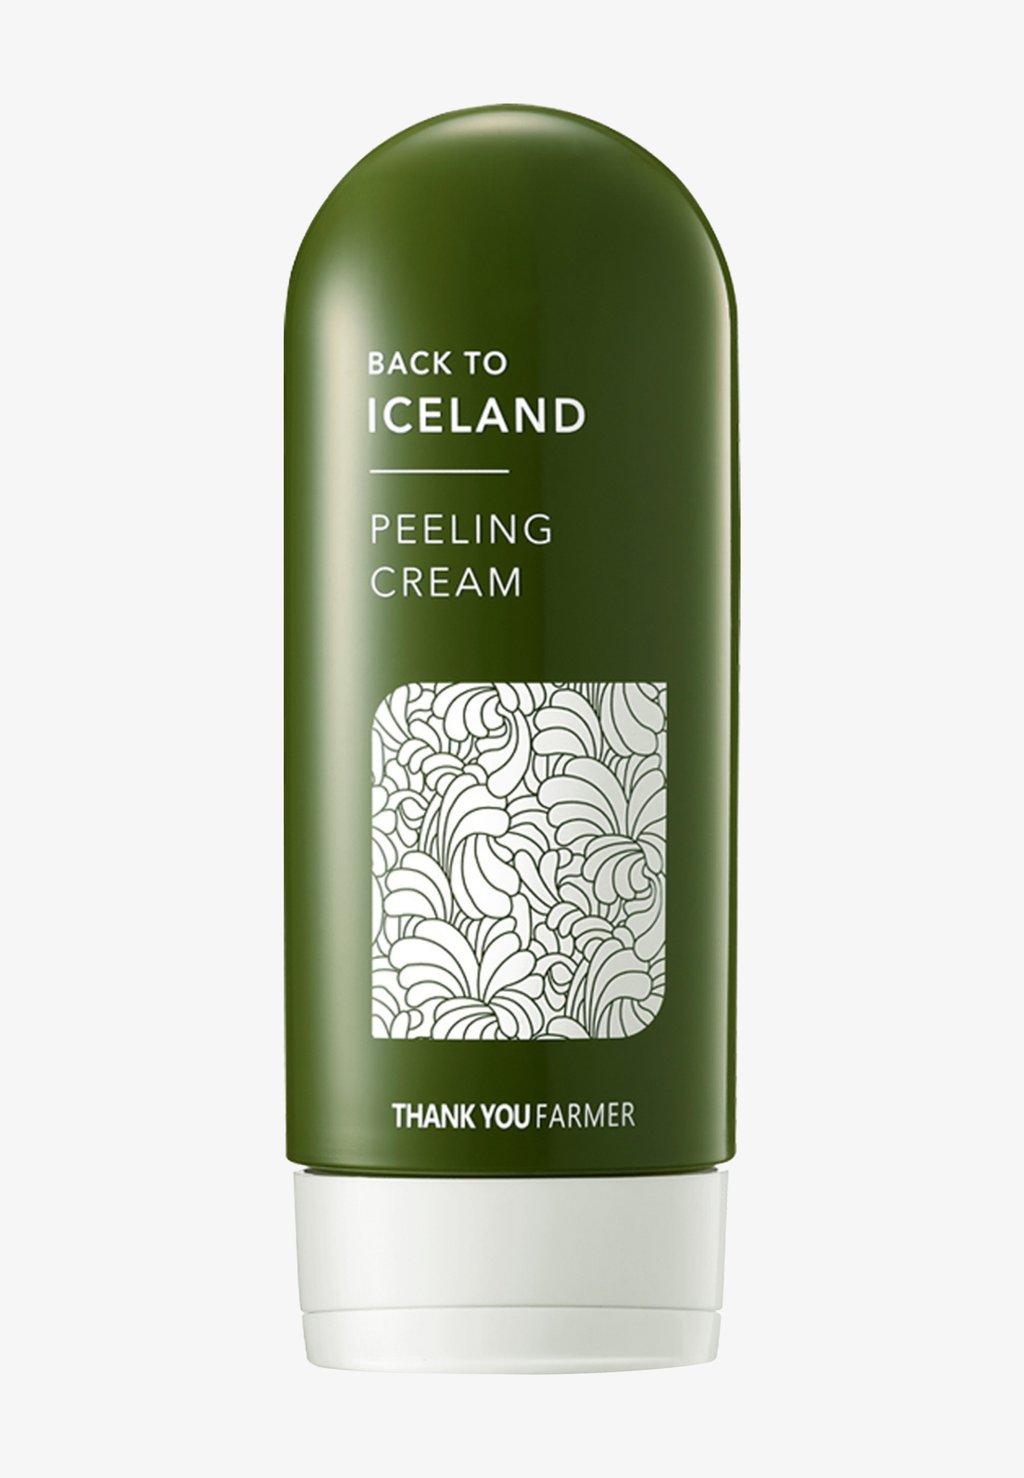 Дневной крем Back To Iceland Peeling Cream Thank You Farmer thank you farmer крем пилинг для лица с ледниковой водой back to iceland